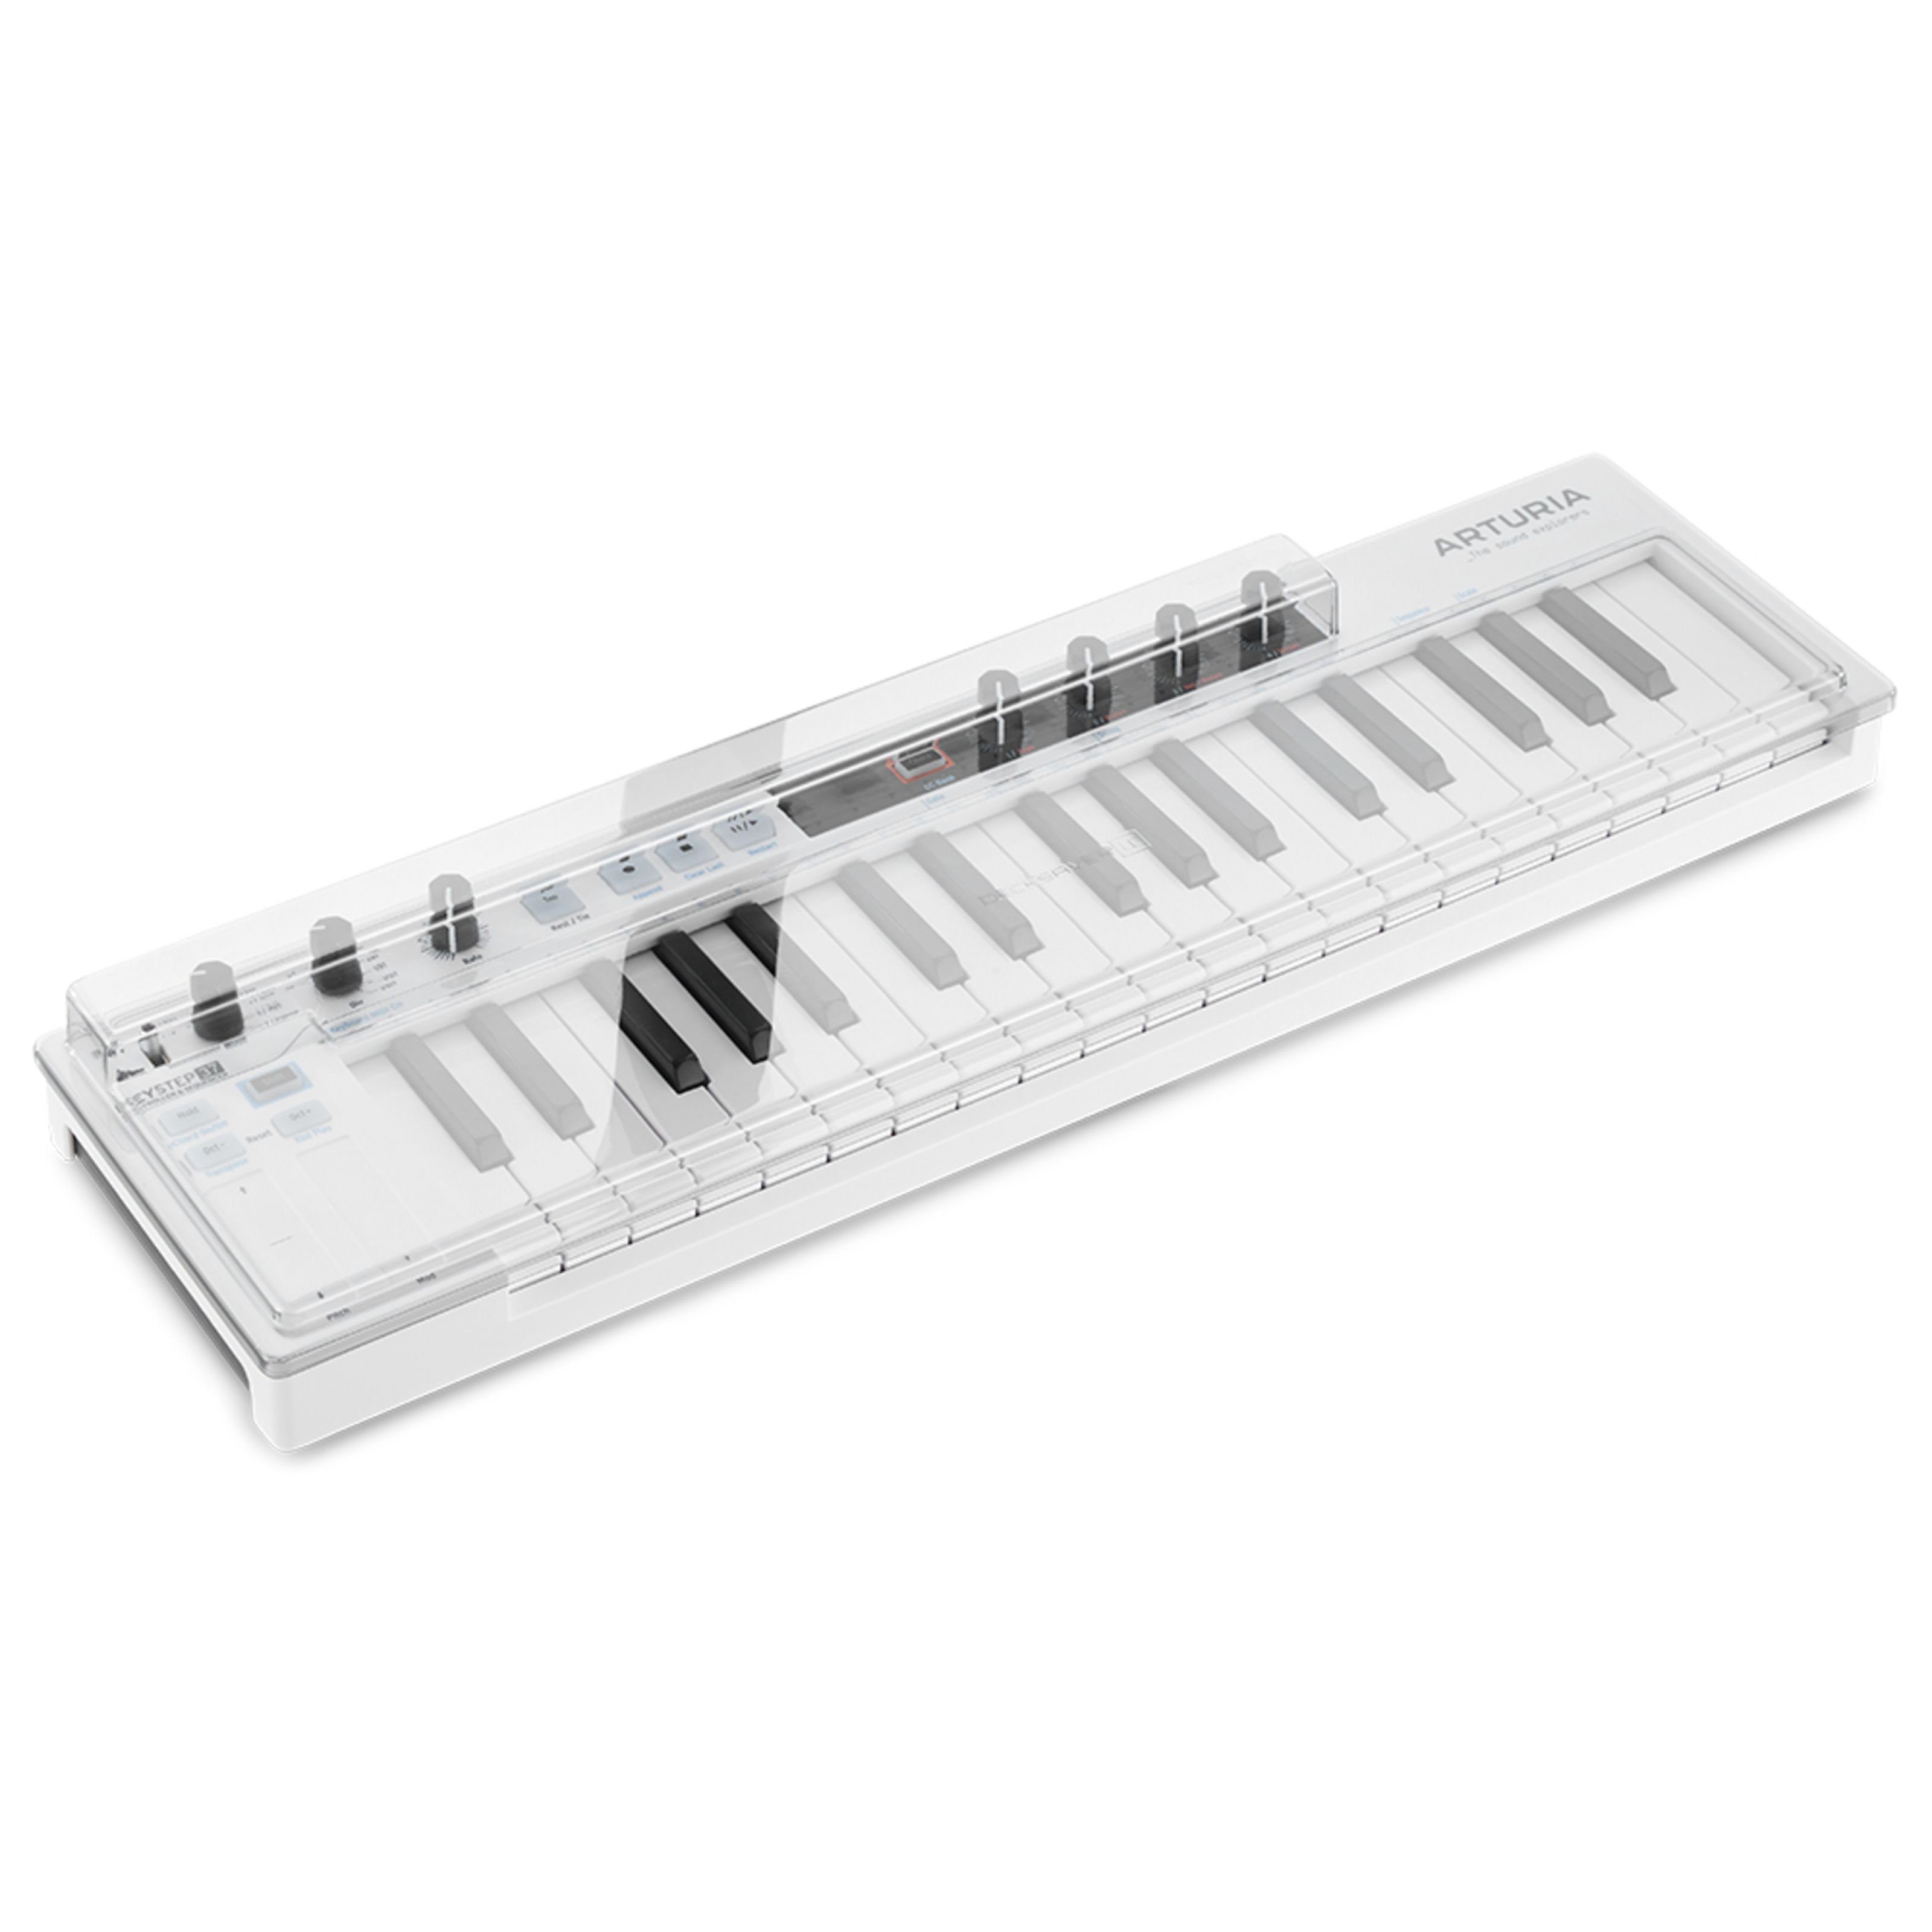 Decksaver Spielzeug-Musikinstrument, Arturia Keystep 37 Cover - Abdeckung für Keyboards